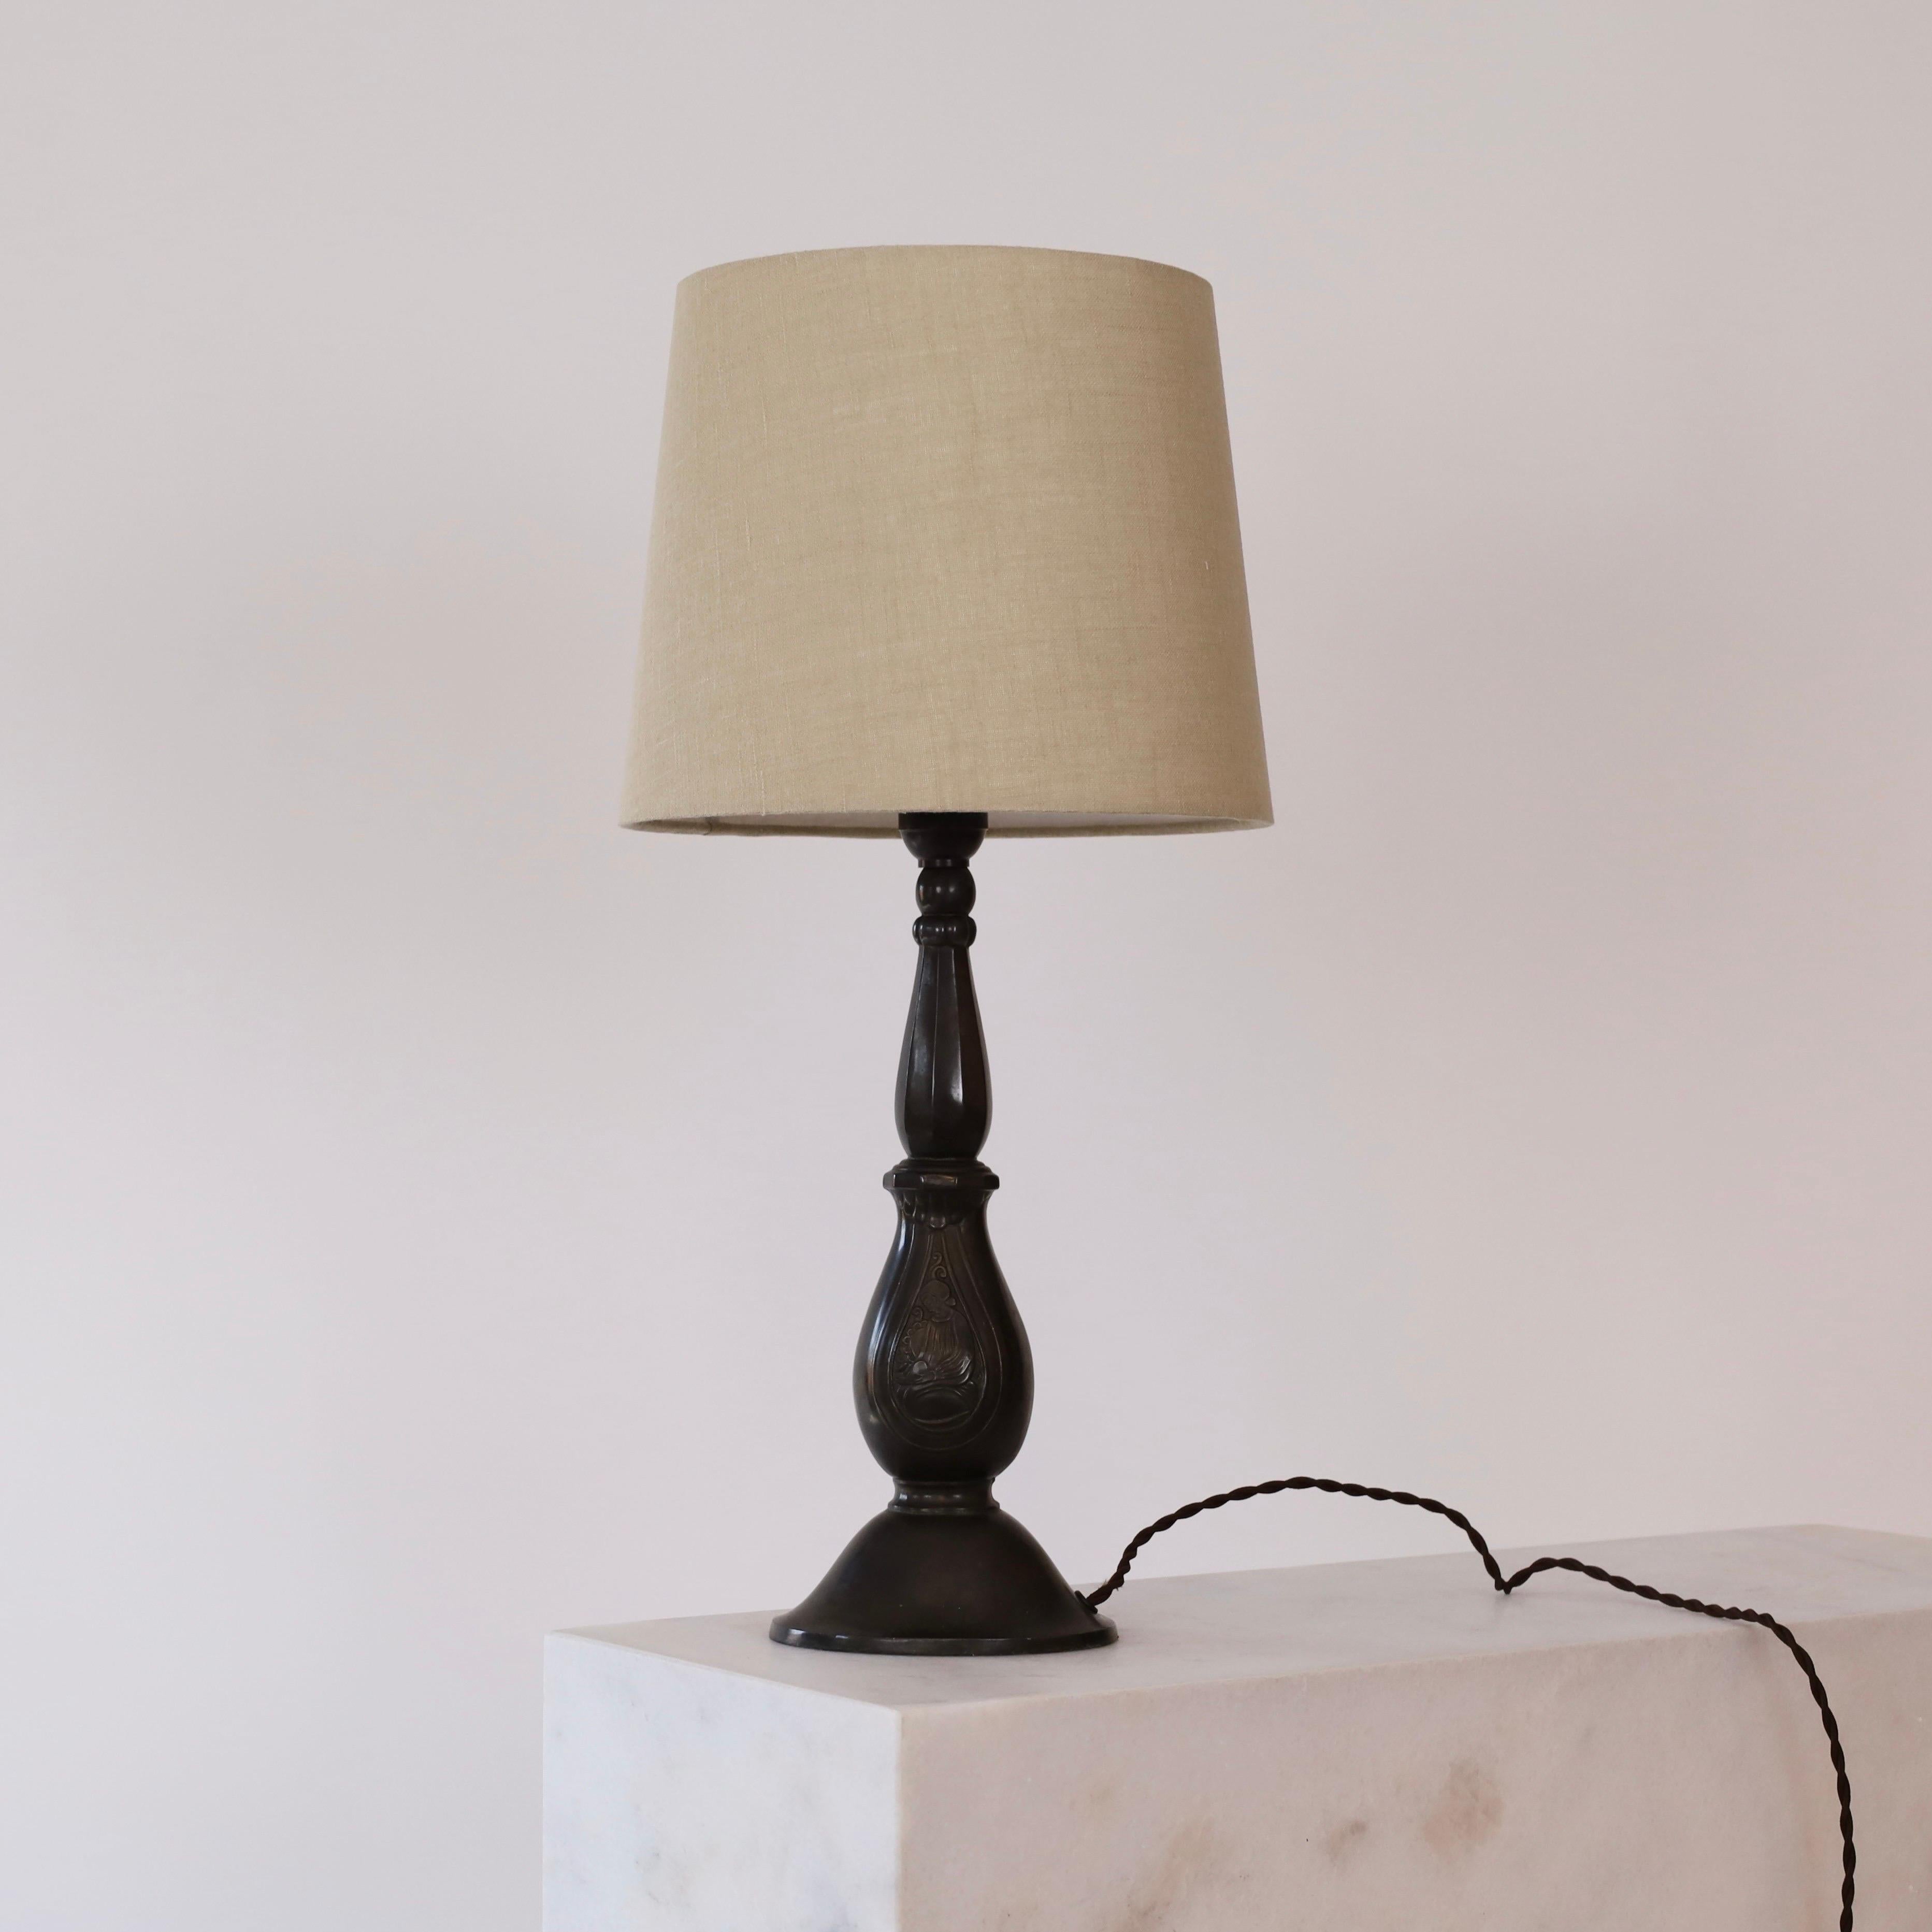 Une lampe de table de Just Andersen en très bon état. Elle fait partie des premières œuvres de True Andersen et témoigne de sa contribution au mouvement art déco danois dans les années 1920. Une pièce pour une belle maison.

* Lampe de table en